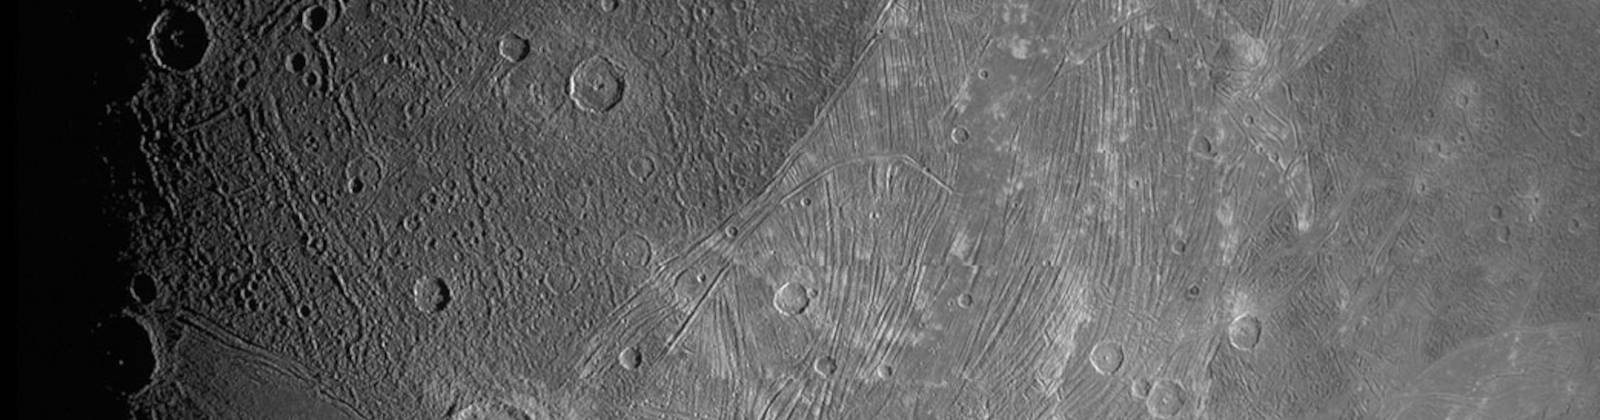 Gros plan sur Ganymède par la sonde Juno